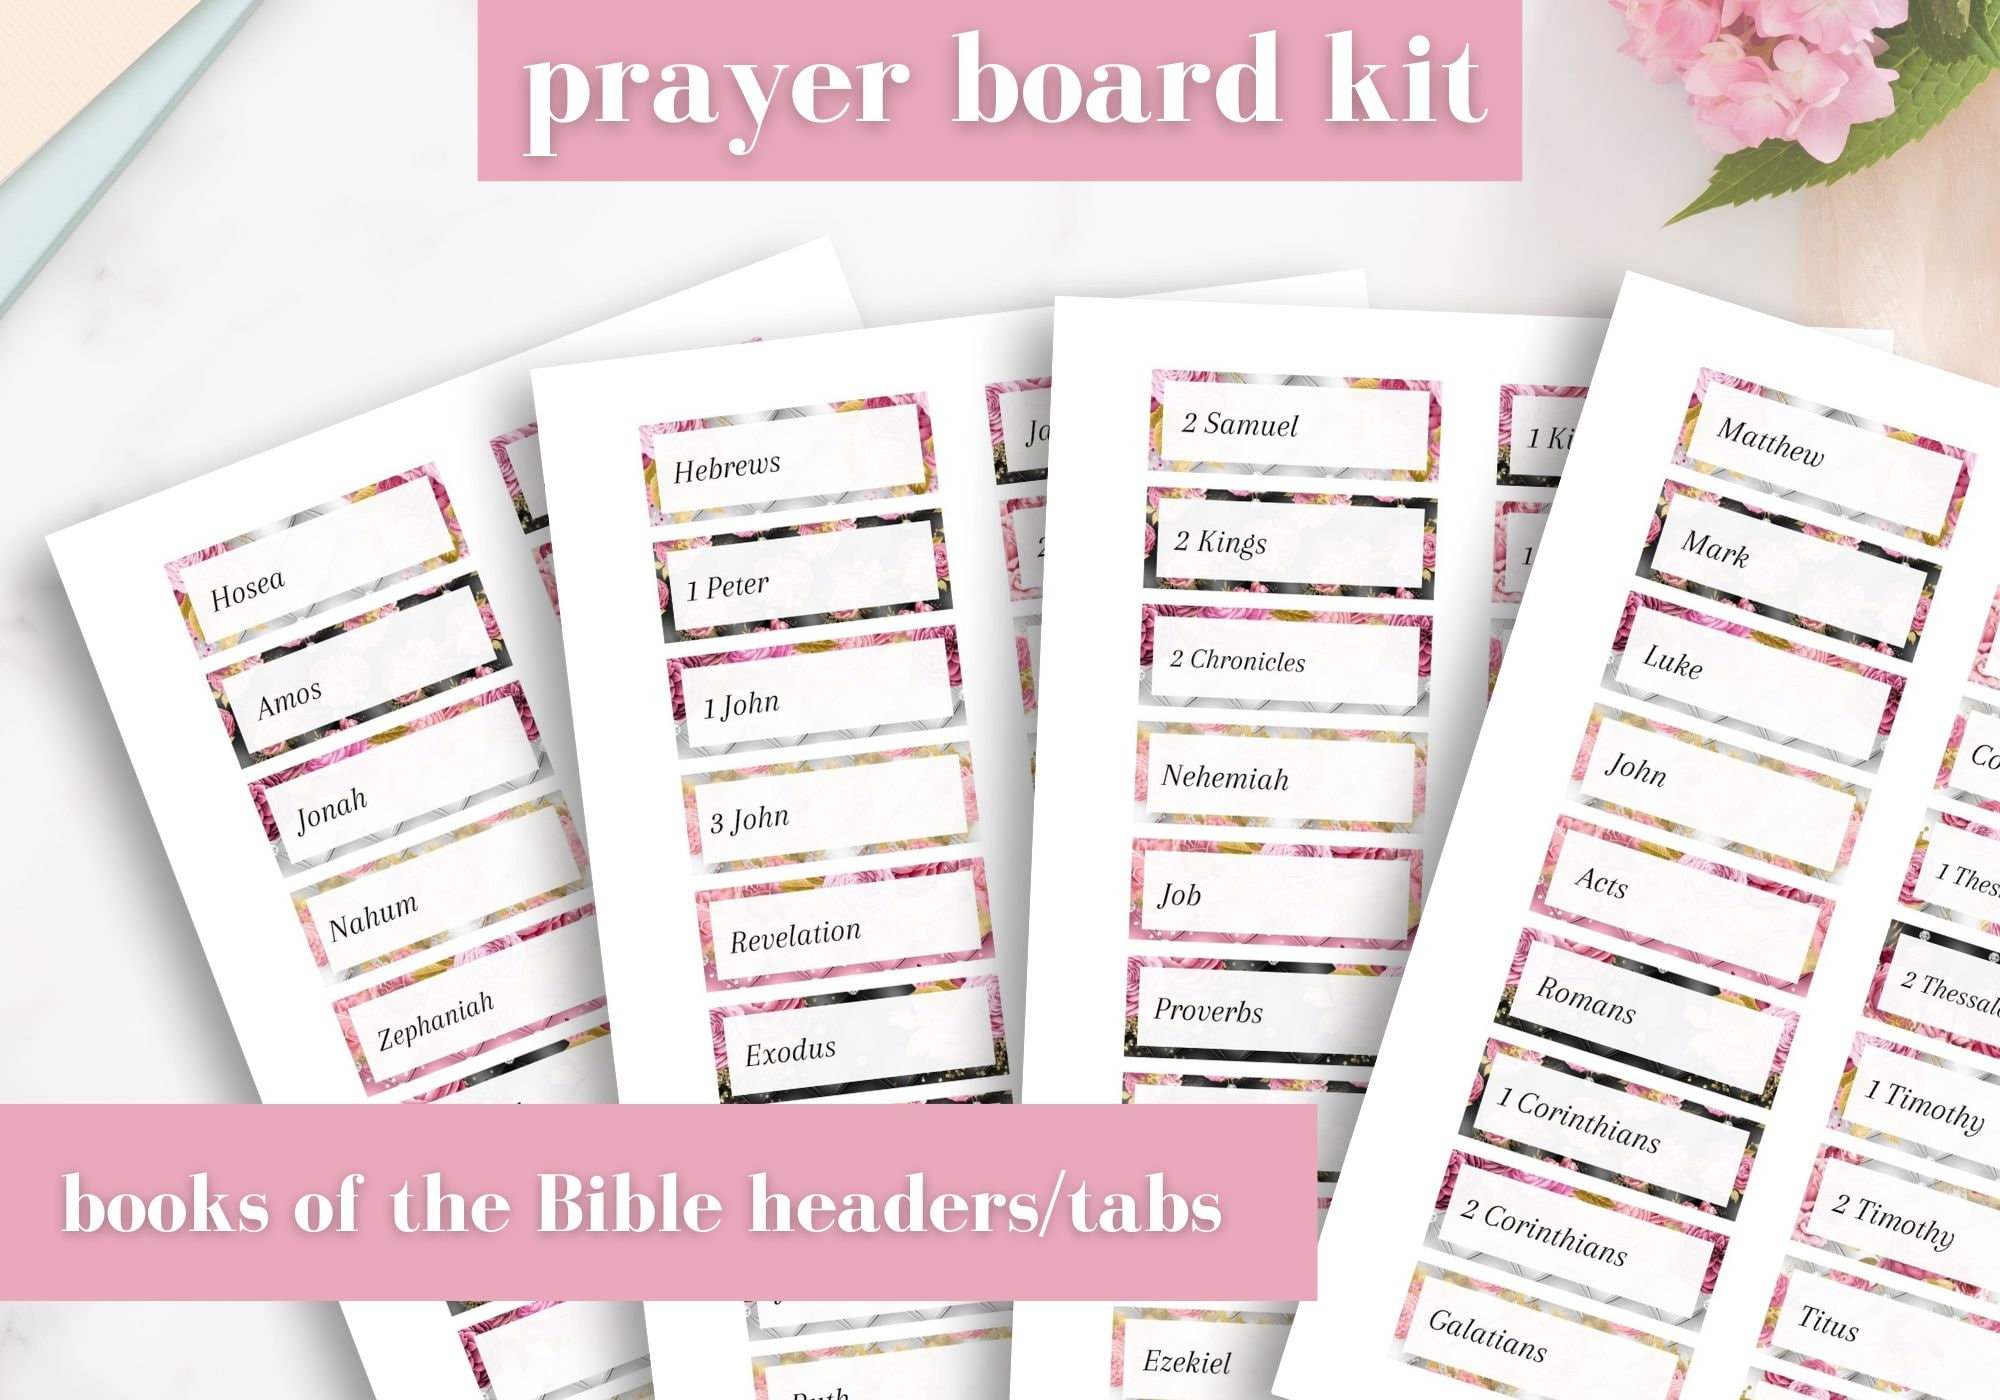 Prayer Board Headings, Prayer Board Printable's, Prayer Board Kit